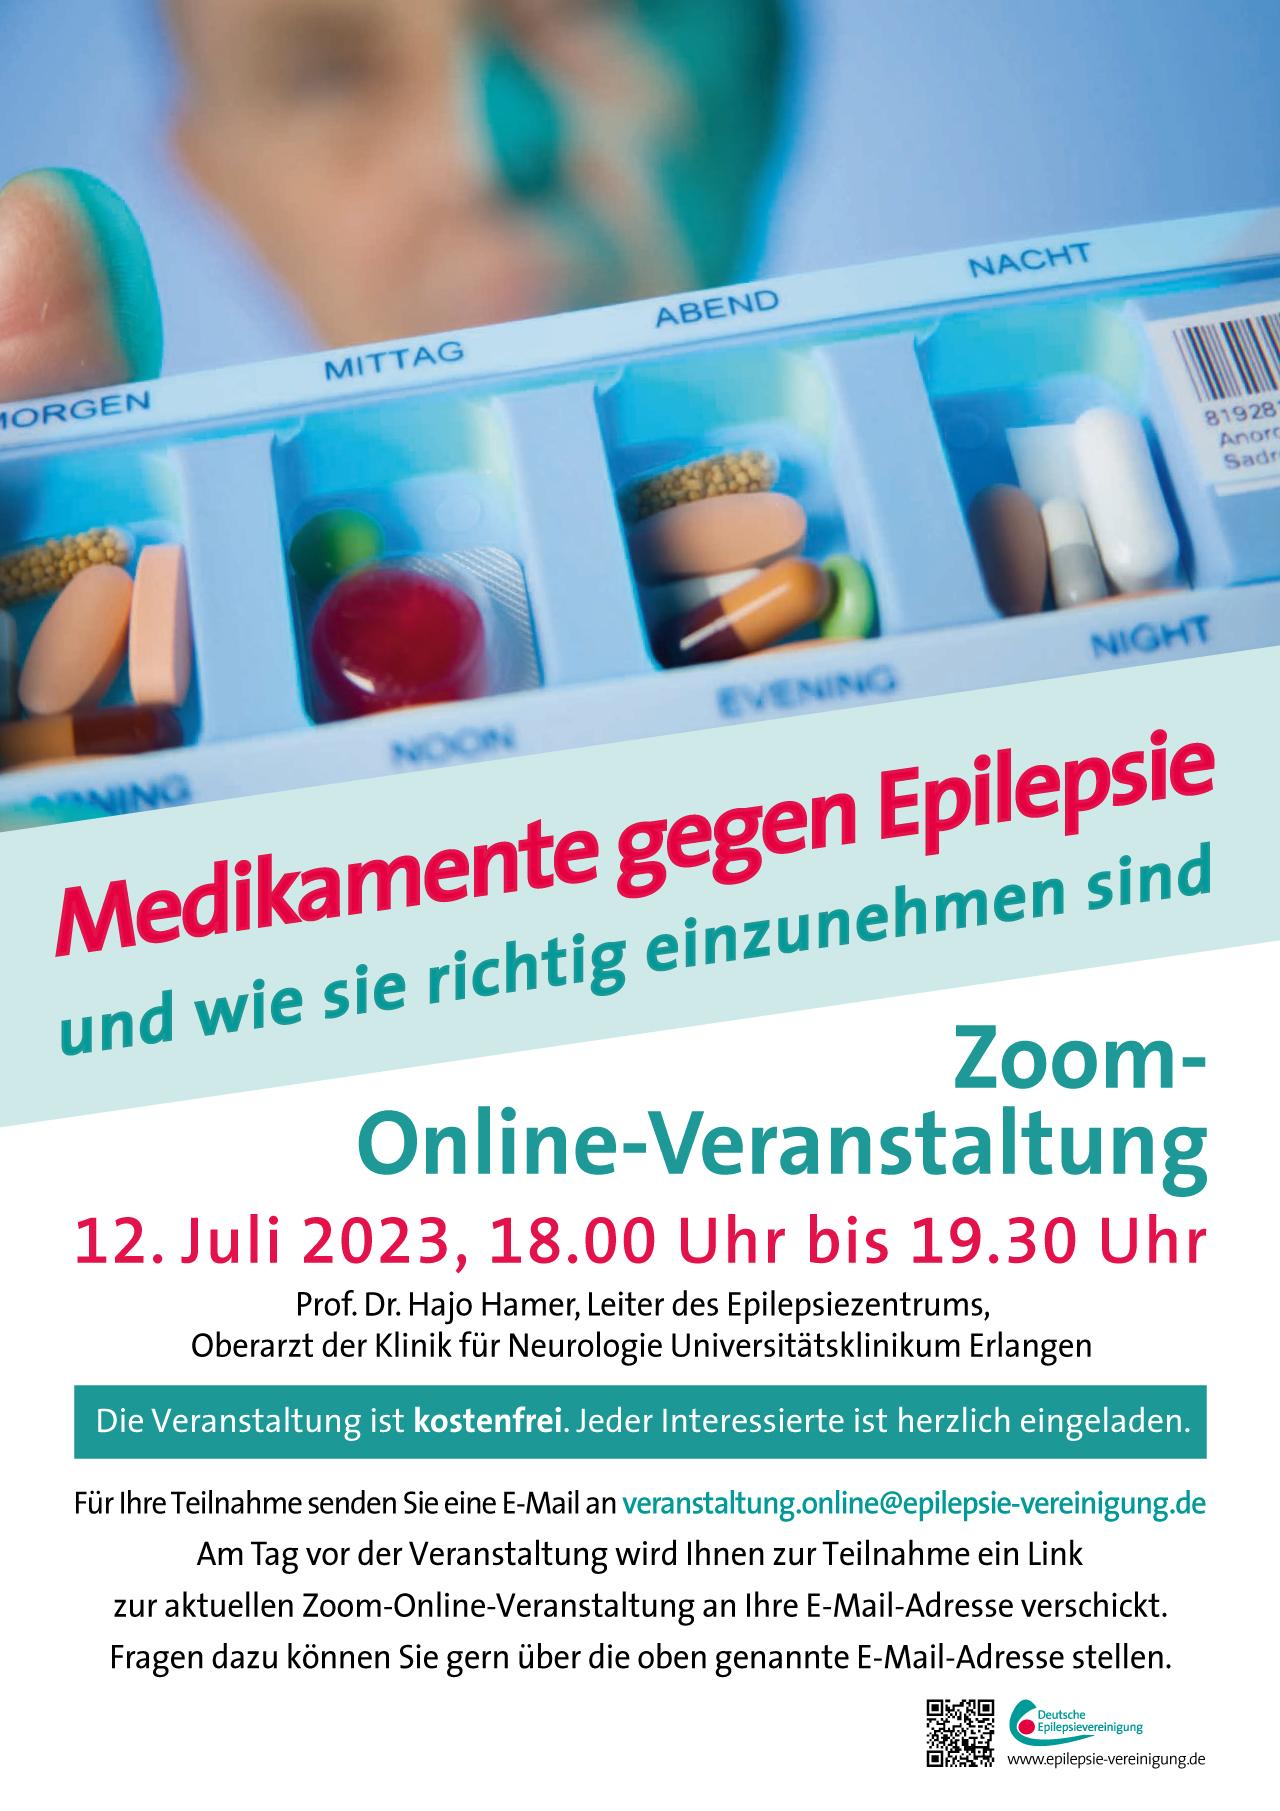 Plakat zur Online-Veranstaltung mit Prof. Hamer zu Epilepsie-Medikamenten